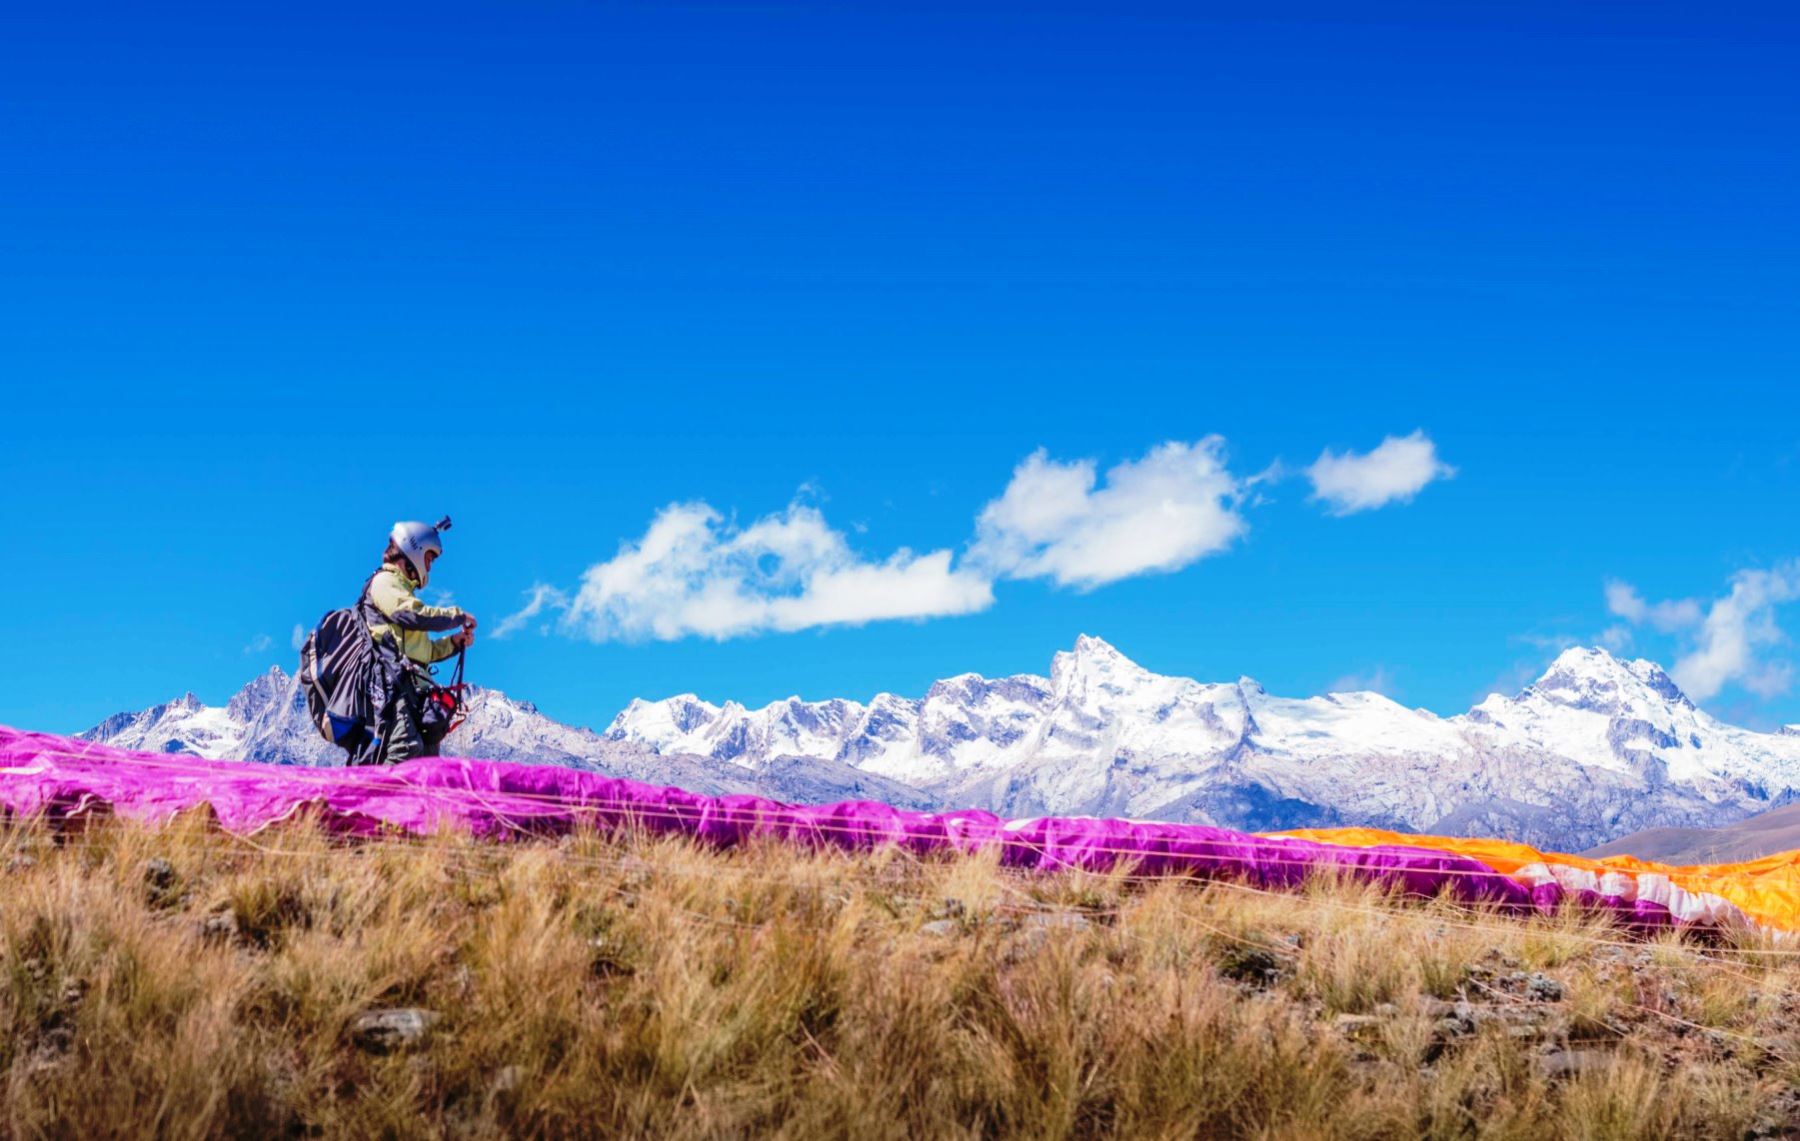 Diversas competencias deportistas se desarrollarán en el Festival del Andinismo Cordillera Blanca 2016, en Huaraz, Áncash.